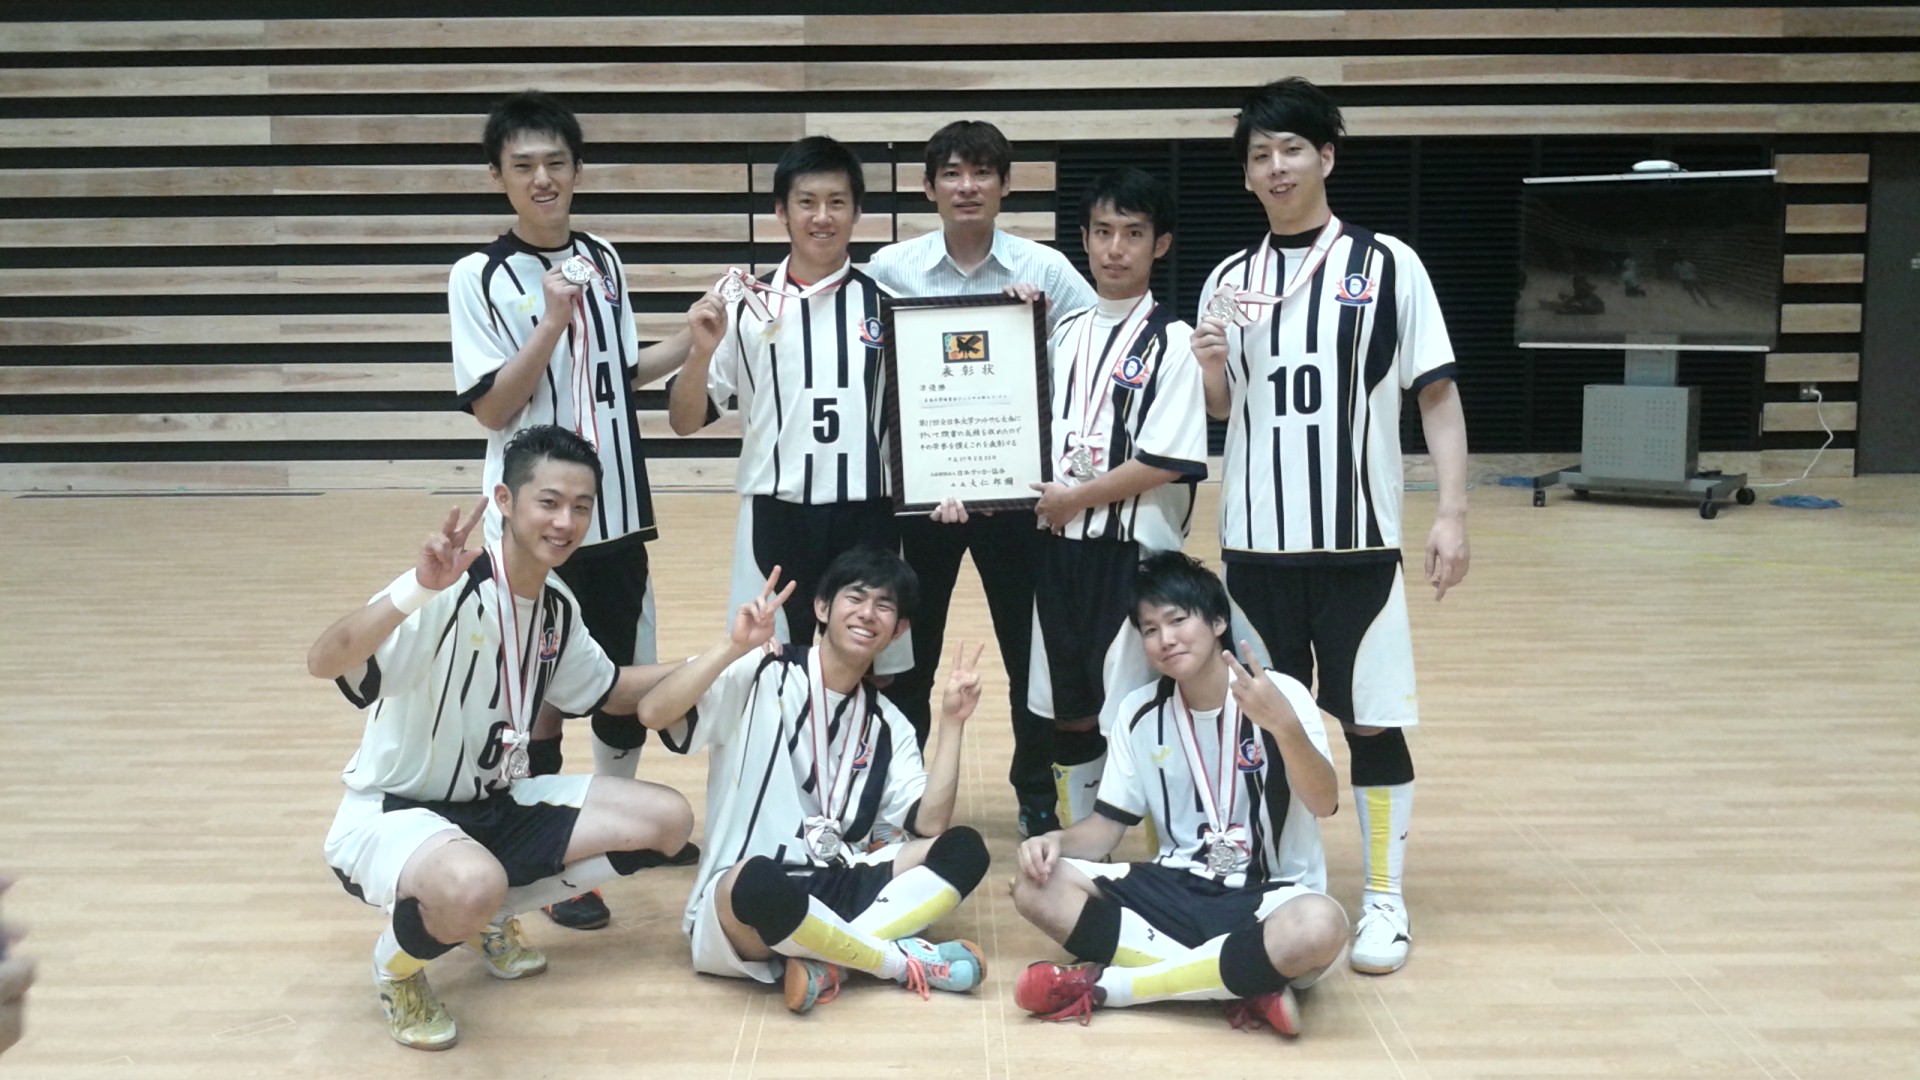 体育会フットサル部エフ ドゥがインカレ全国大会で準優勝しました 広島大学